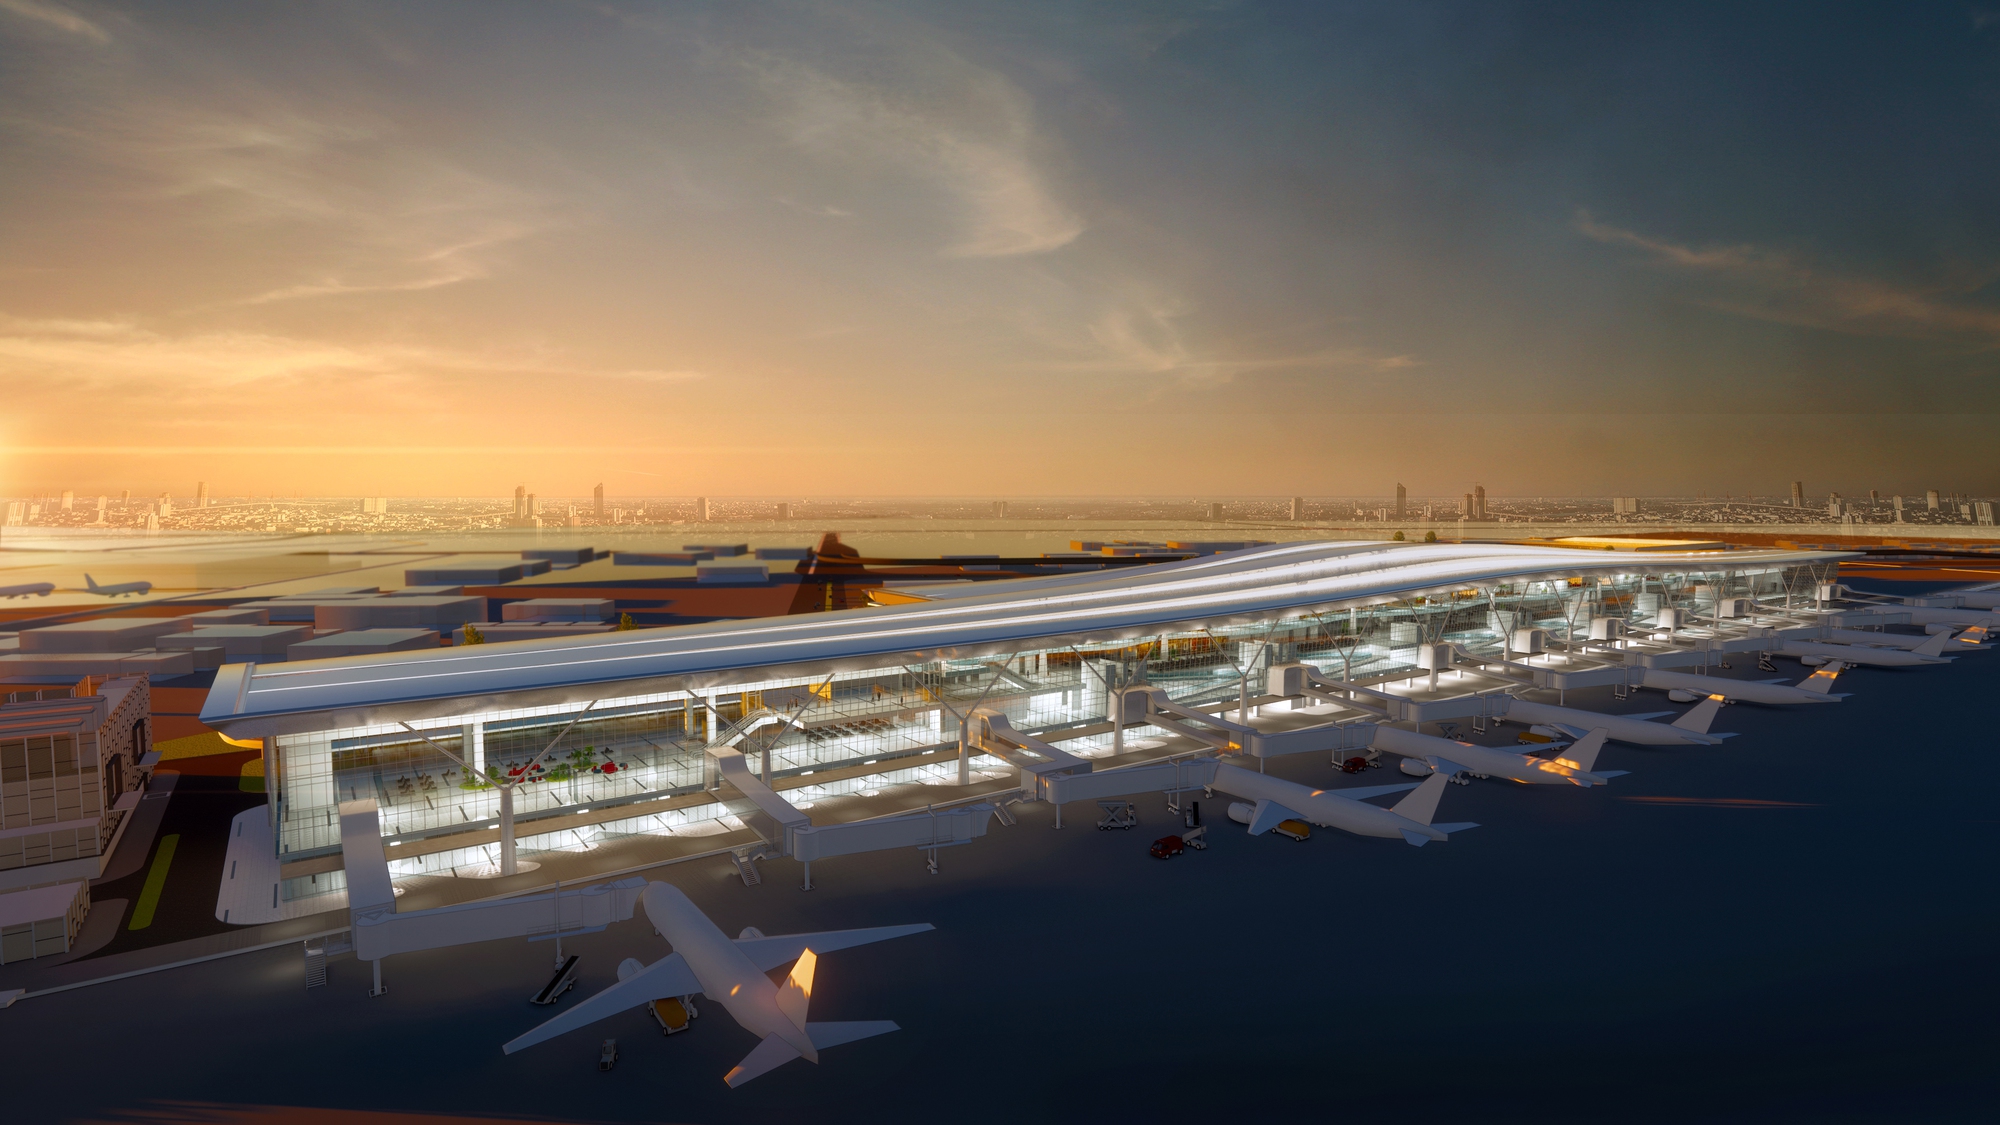 Hé lộ thiết kế nhà ga T3 sân bay Tân Sơn Nhất có gì đặc biệt? - Ảnh 5.